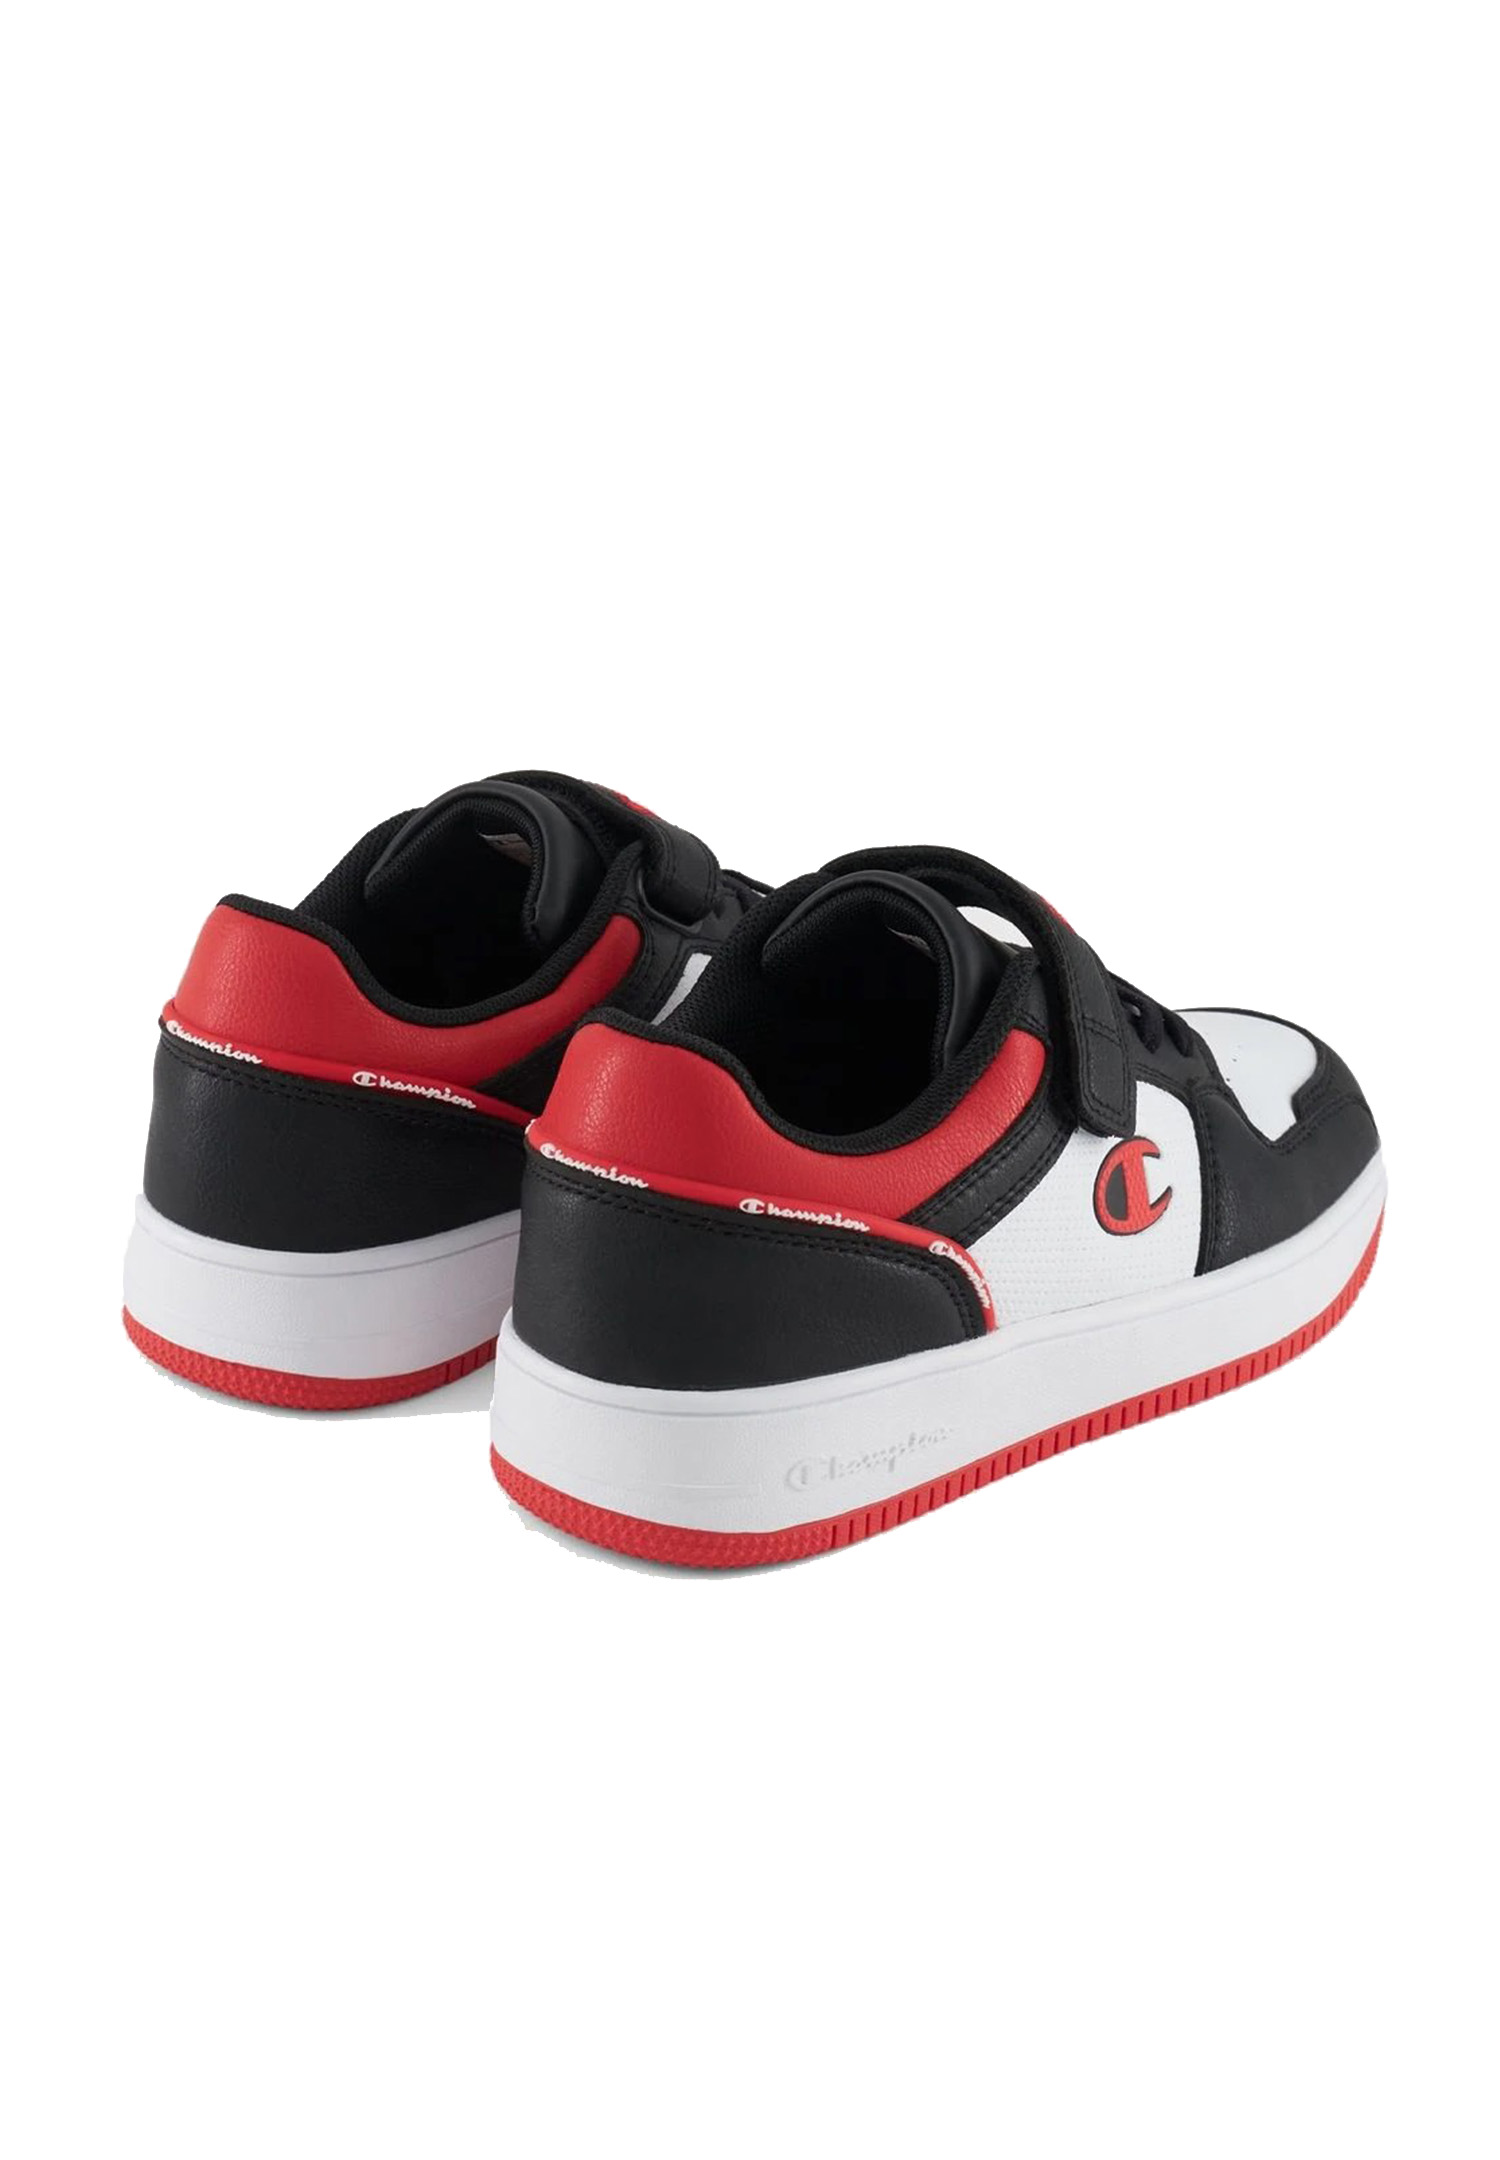 weiss/schwarz REBOUND Champion S32414-CHA-KK003 Sneaker Unisex Kinder 2.0LOW /rot